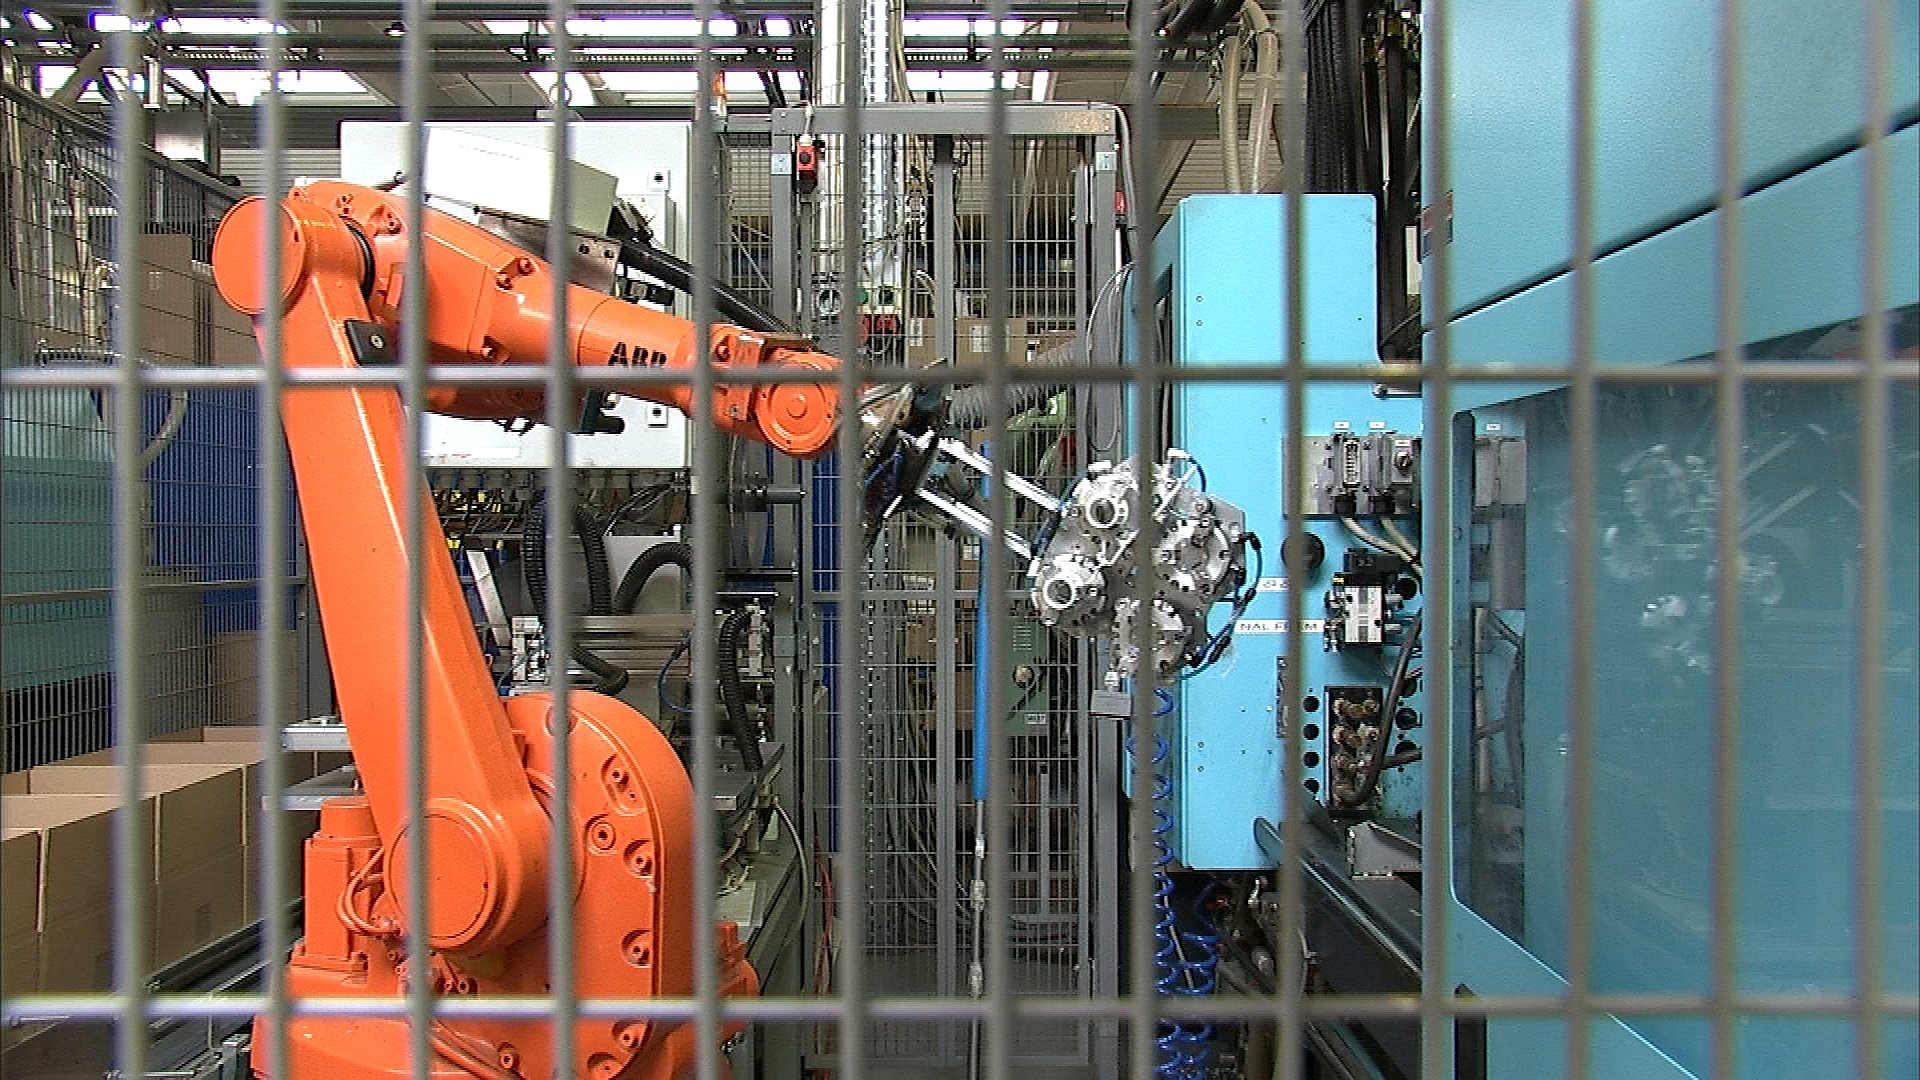 tragt Lederen Kurve Robot-virksomhed vinder iværksætterpris | TV2 Fyn